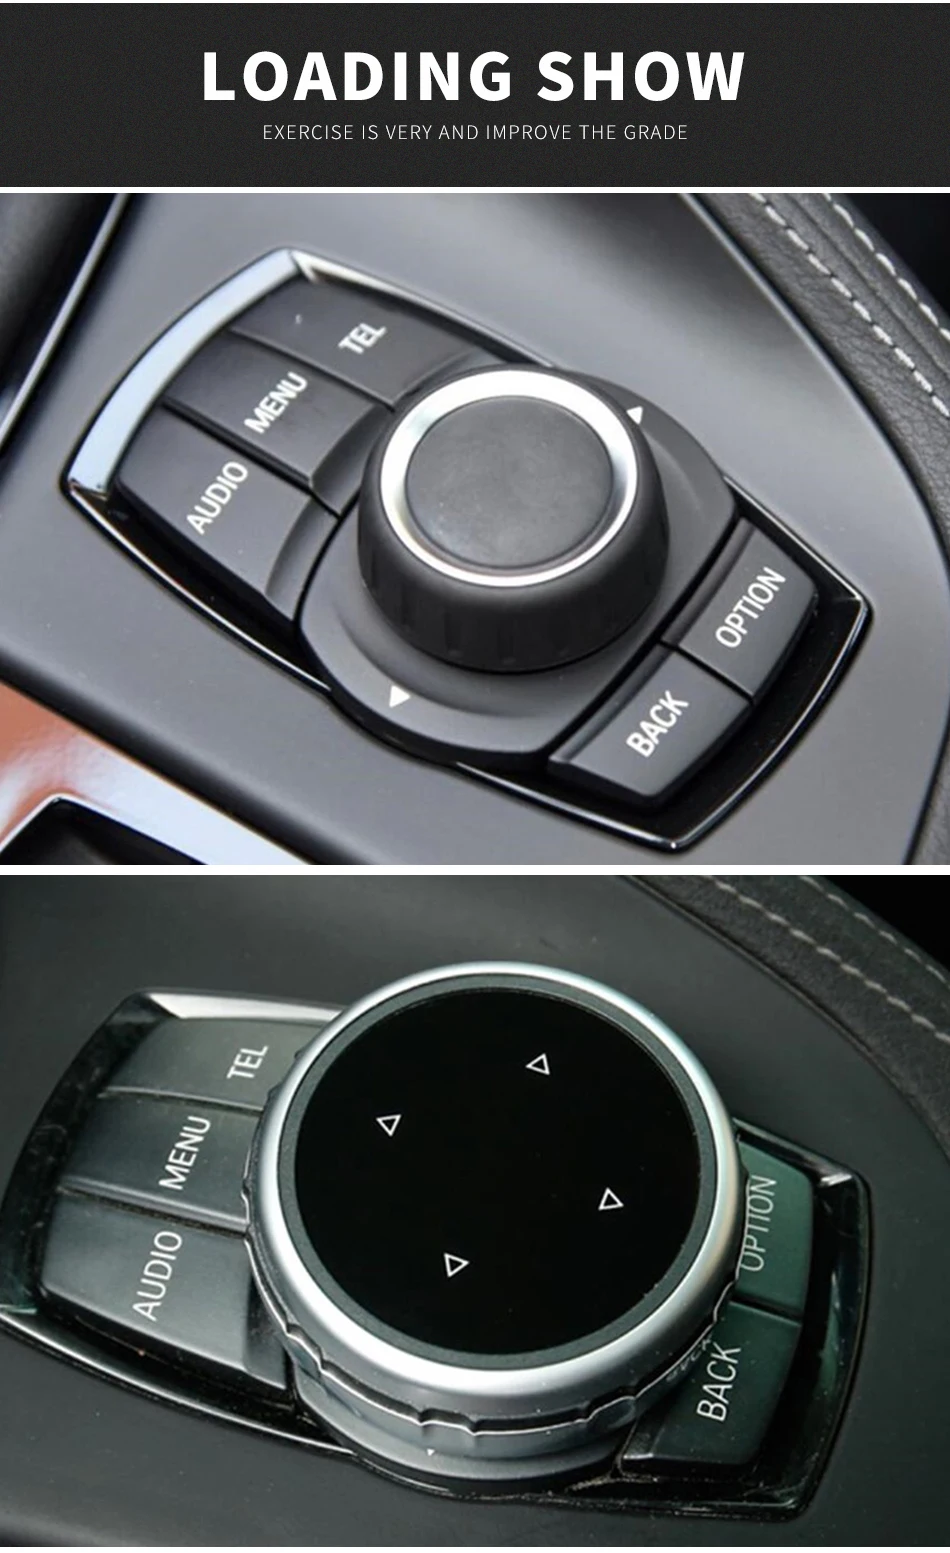 Автомобильный мультимедийный Управление ручка Кнопка чехол наклейки для BMW X1 X3 X5 X6 F30 E90 E92 F10 F18 F11 F07 F48 Z4 F15 F16 F25 E60 E61